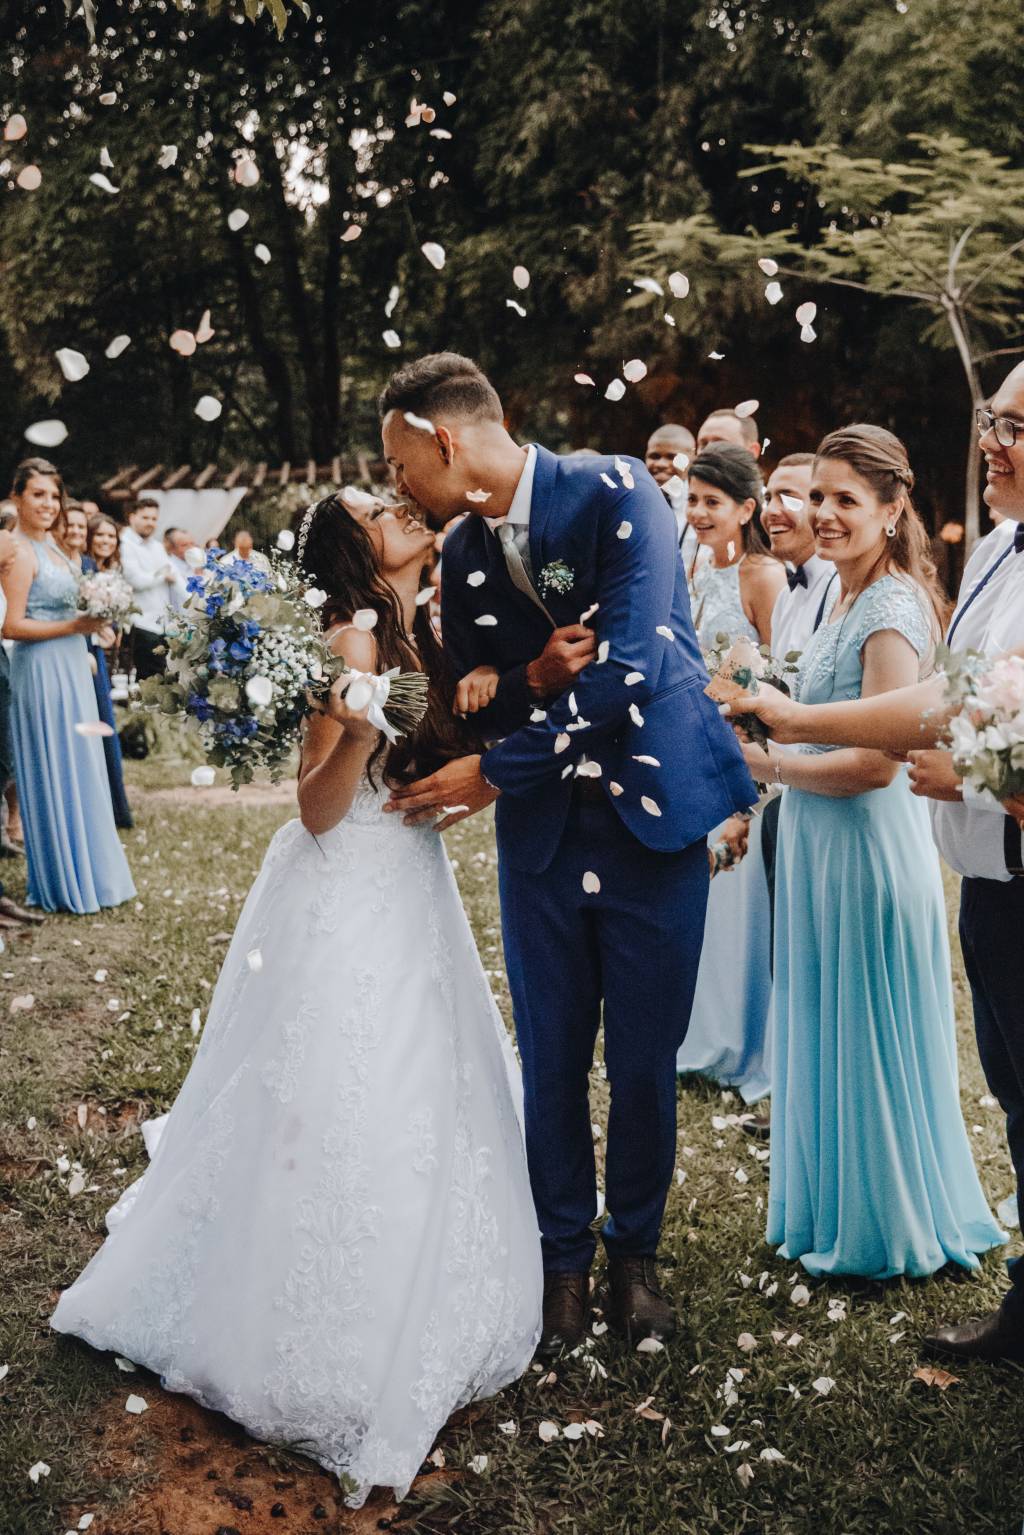 Noivos se beijam em casamento no jardim, com chuva de papel picado e convidados ao redor. madrinhas vestem tons de azul claro